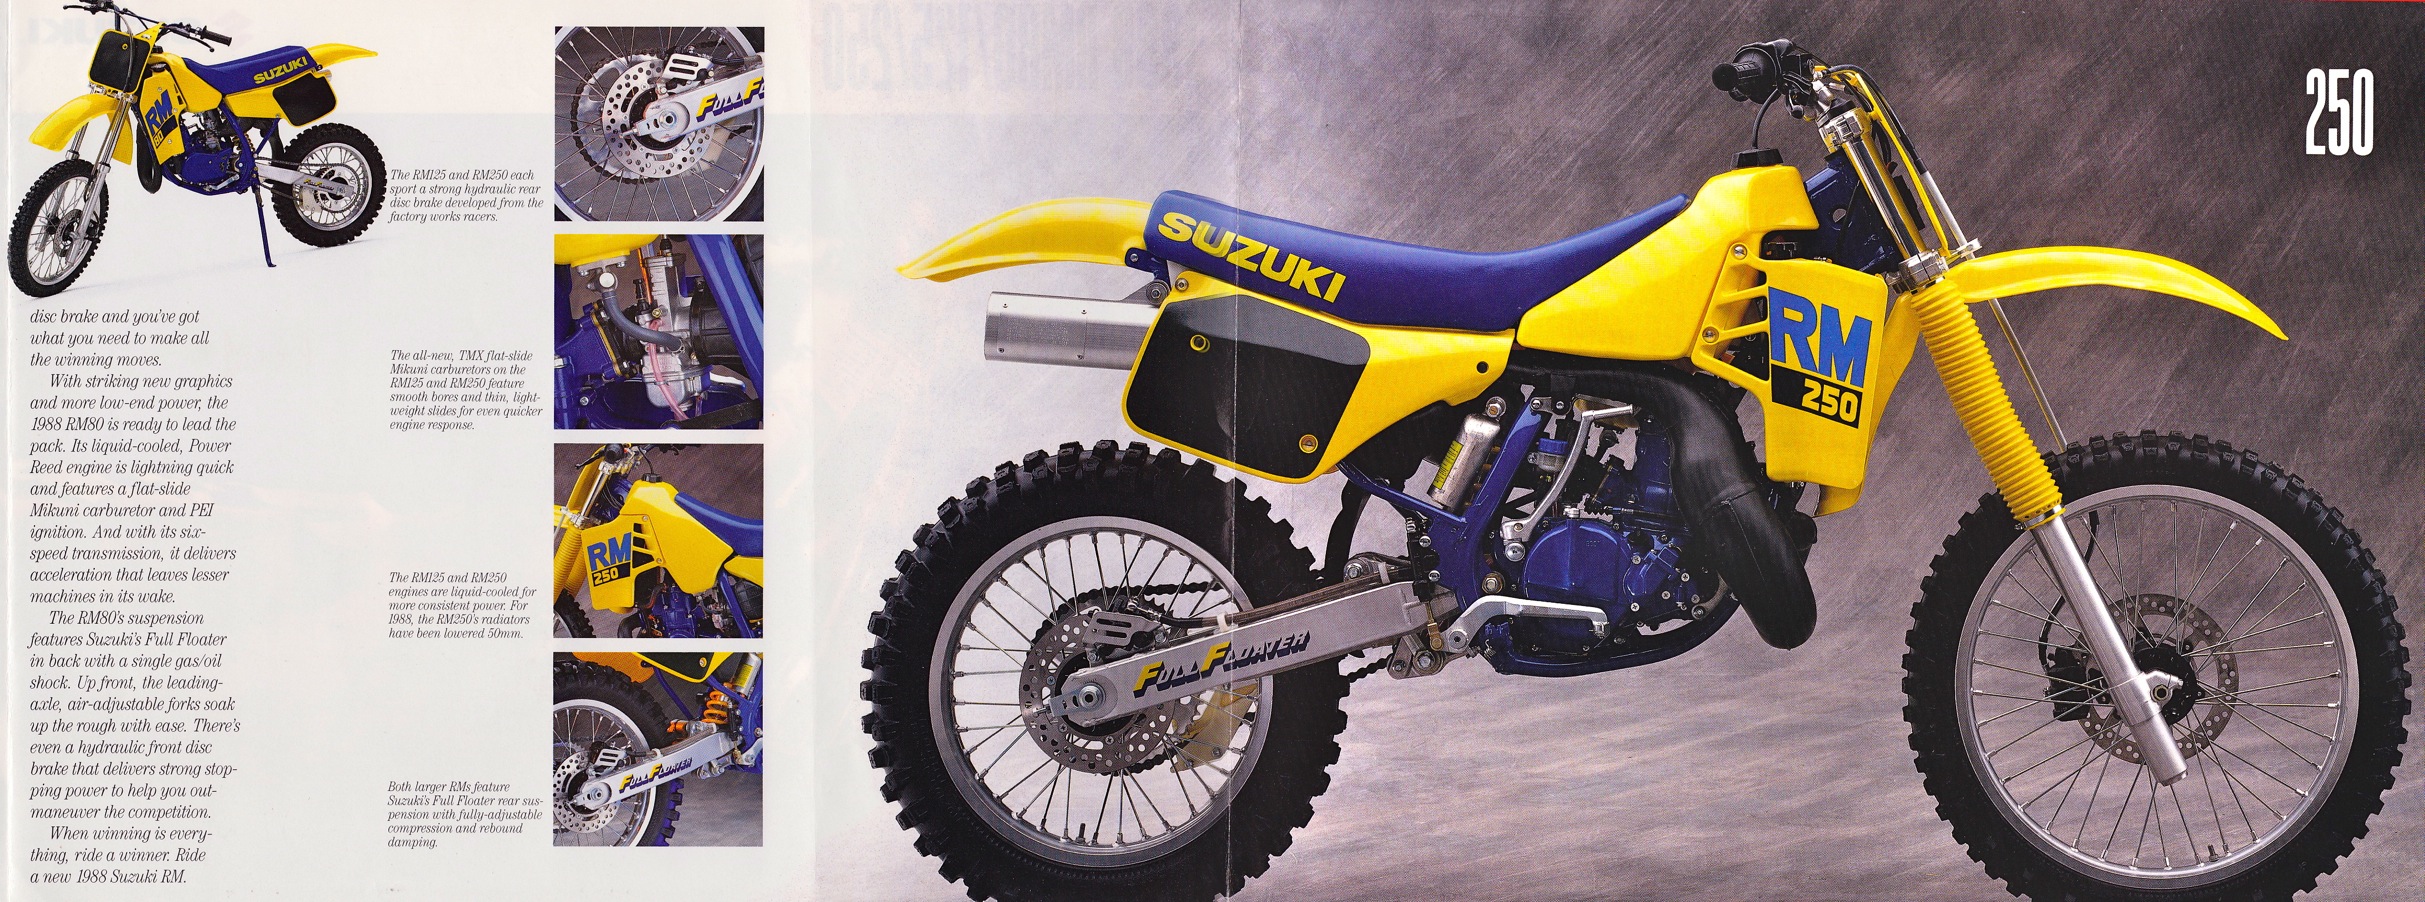 Мотоцикл Suzuki RM 80 1988